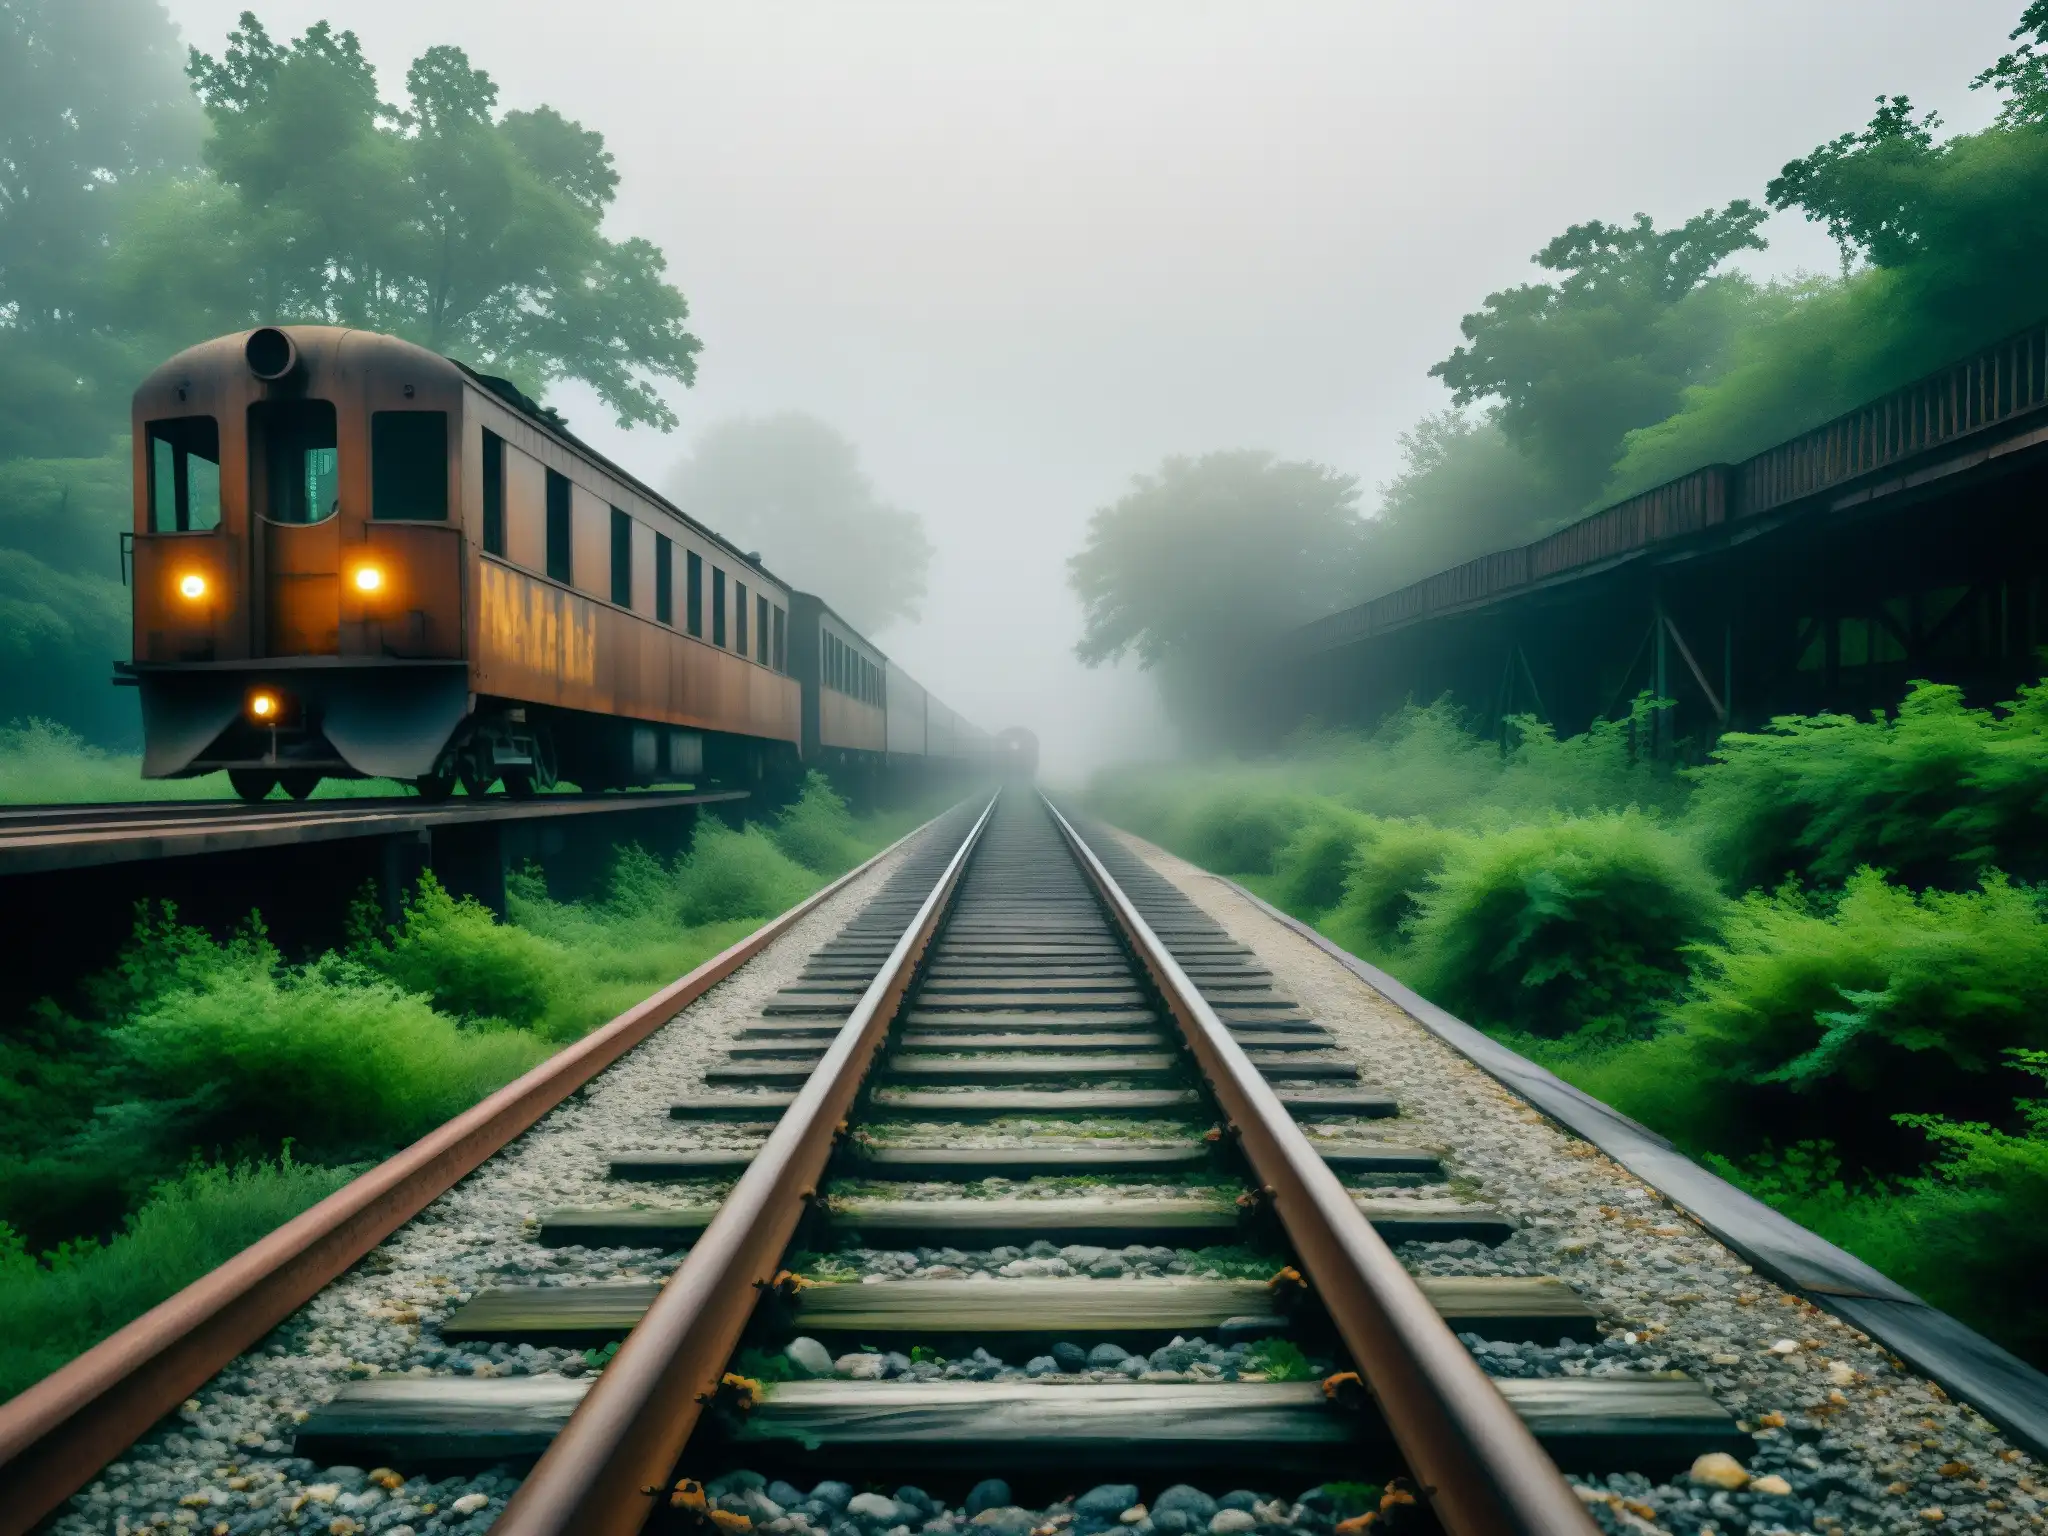 Vieja vía férrea cubierta de maleza con trenes oxidados y neblina, evocando la historia del tren fantasma St